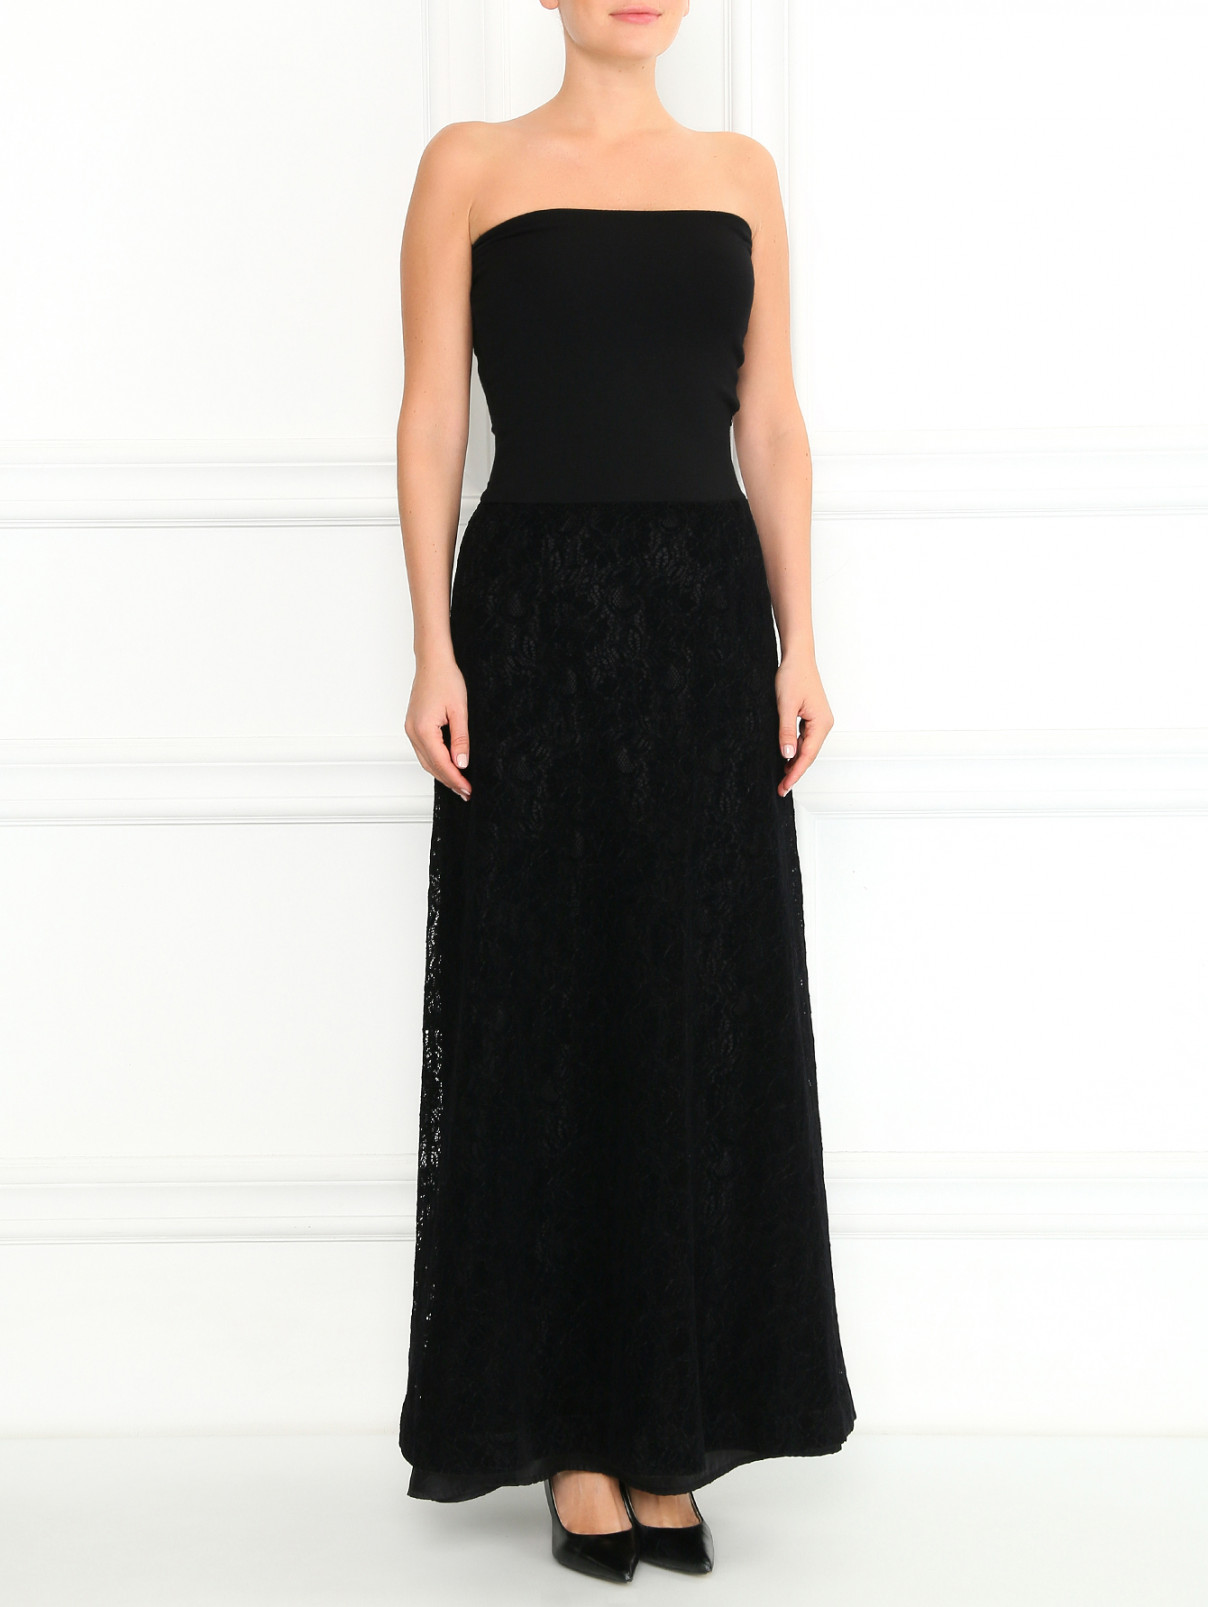 Платье-макси с кружевной юбкой Antonio Marras  –  Модель Общий вид  – Цвет:  Черный